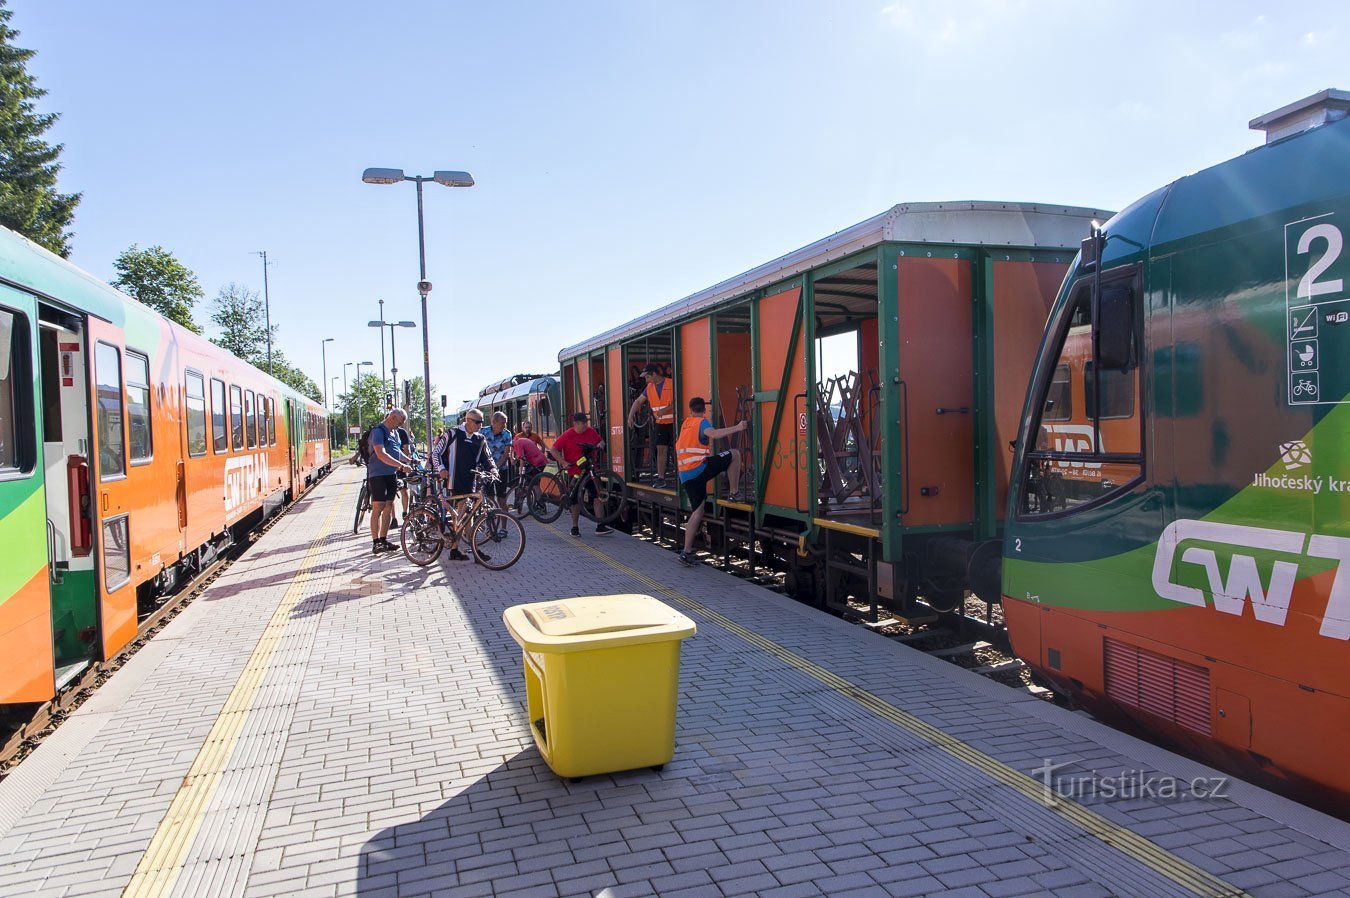 așa arată un tren cu biciclete